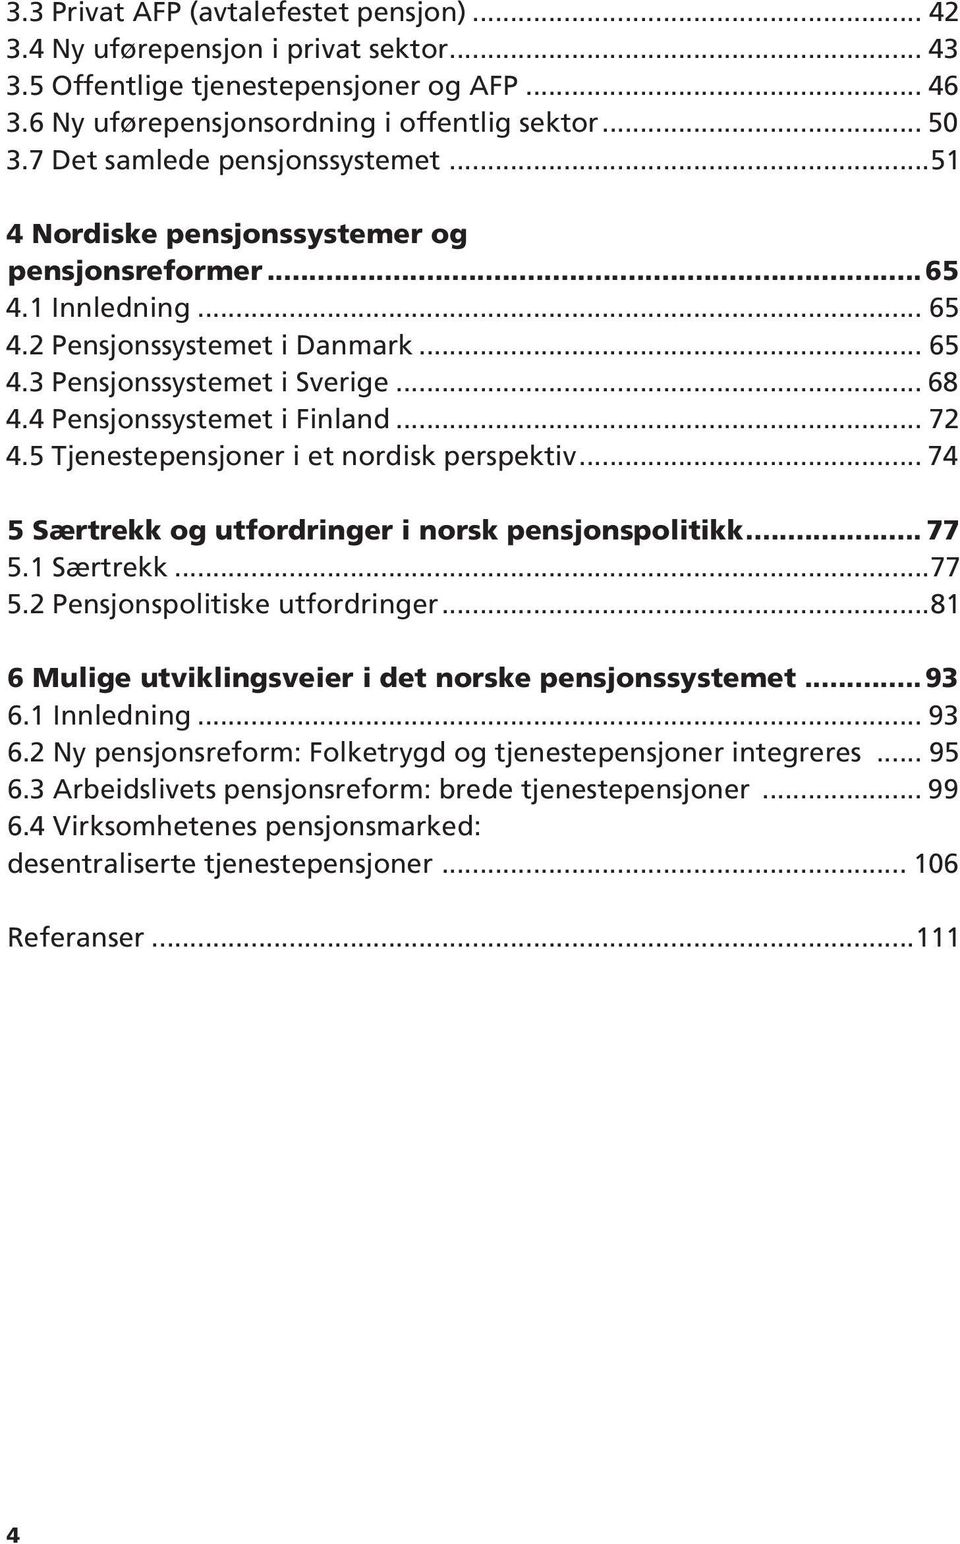 4 Pensjonssystemet i Finland... 72 4.5 Tjenestepensjoner i et nordisk perspektiv... 74 5 Særtrekk og utfordringer i norsk pensjonspolitikk... 77 5.1 Særtrekk...77 5.2 Pensjonspolitiske utfordringer.